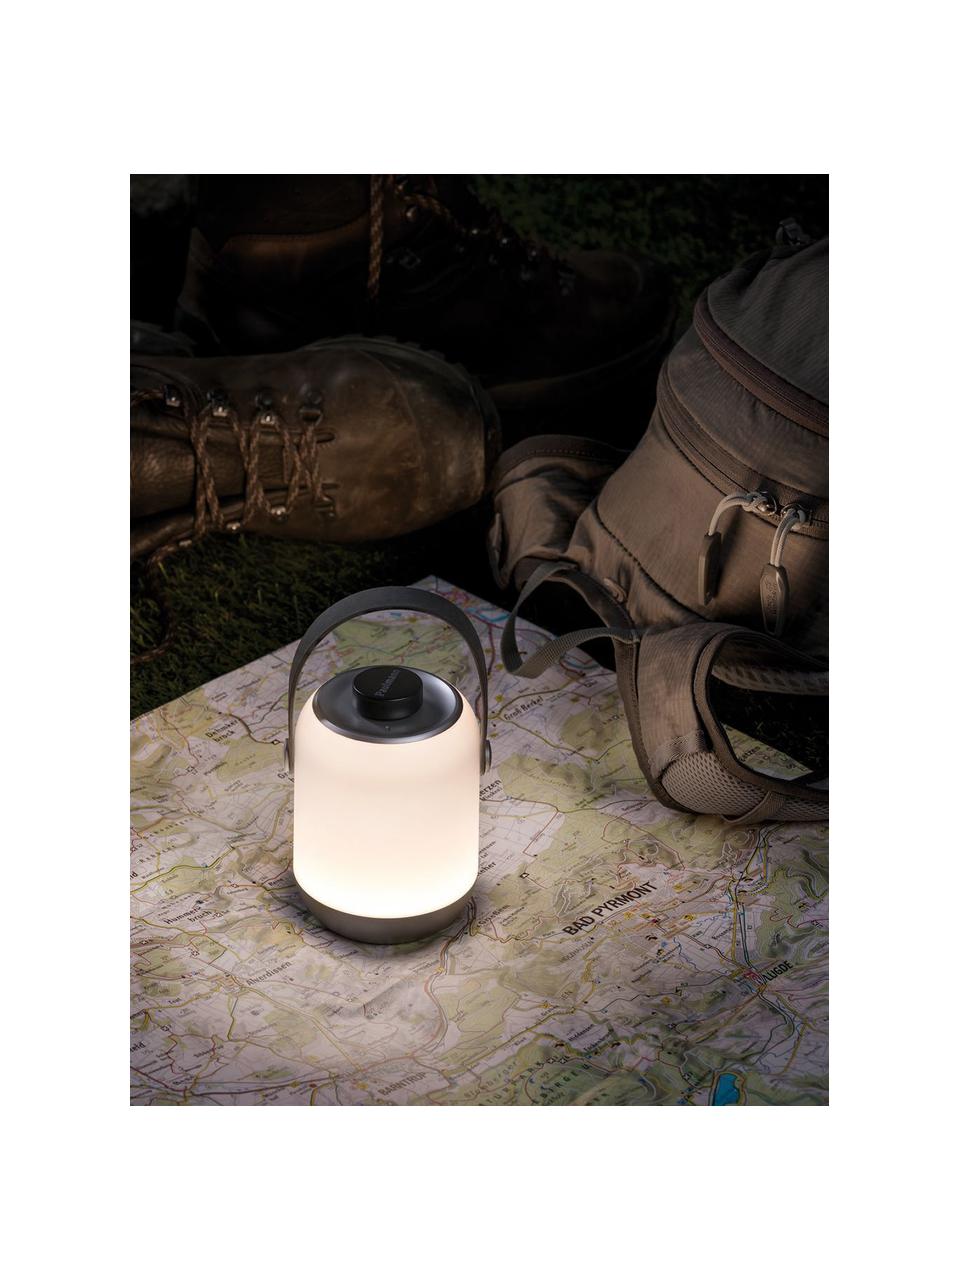 Mobile dimmbare Außentischlampe Clutch, Lampenschirm: Kunststoff, Griff: Kunststoff, Weiß, Grau, Silberfarben, Ø 9 x H 12 cm